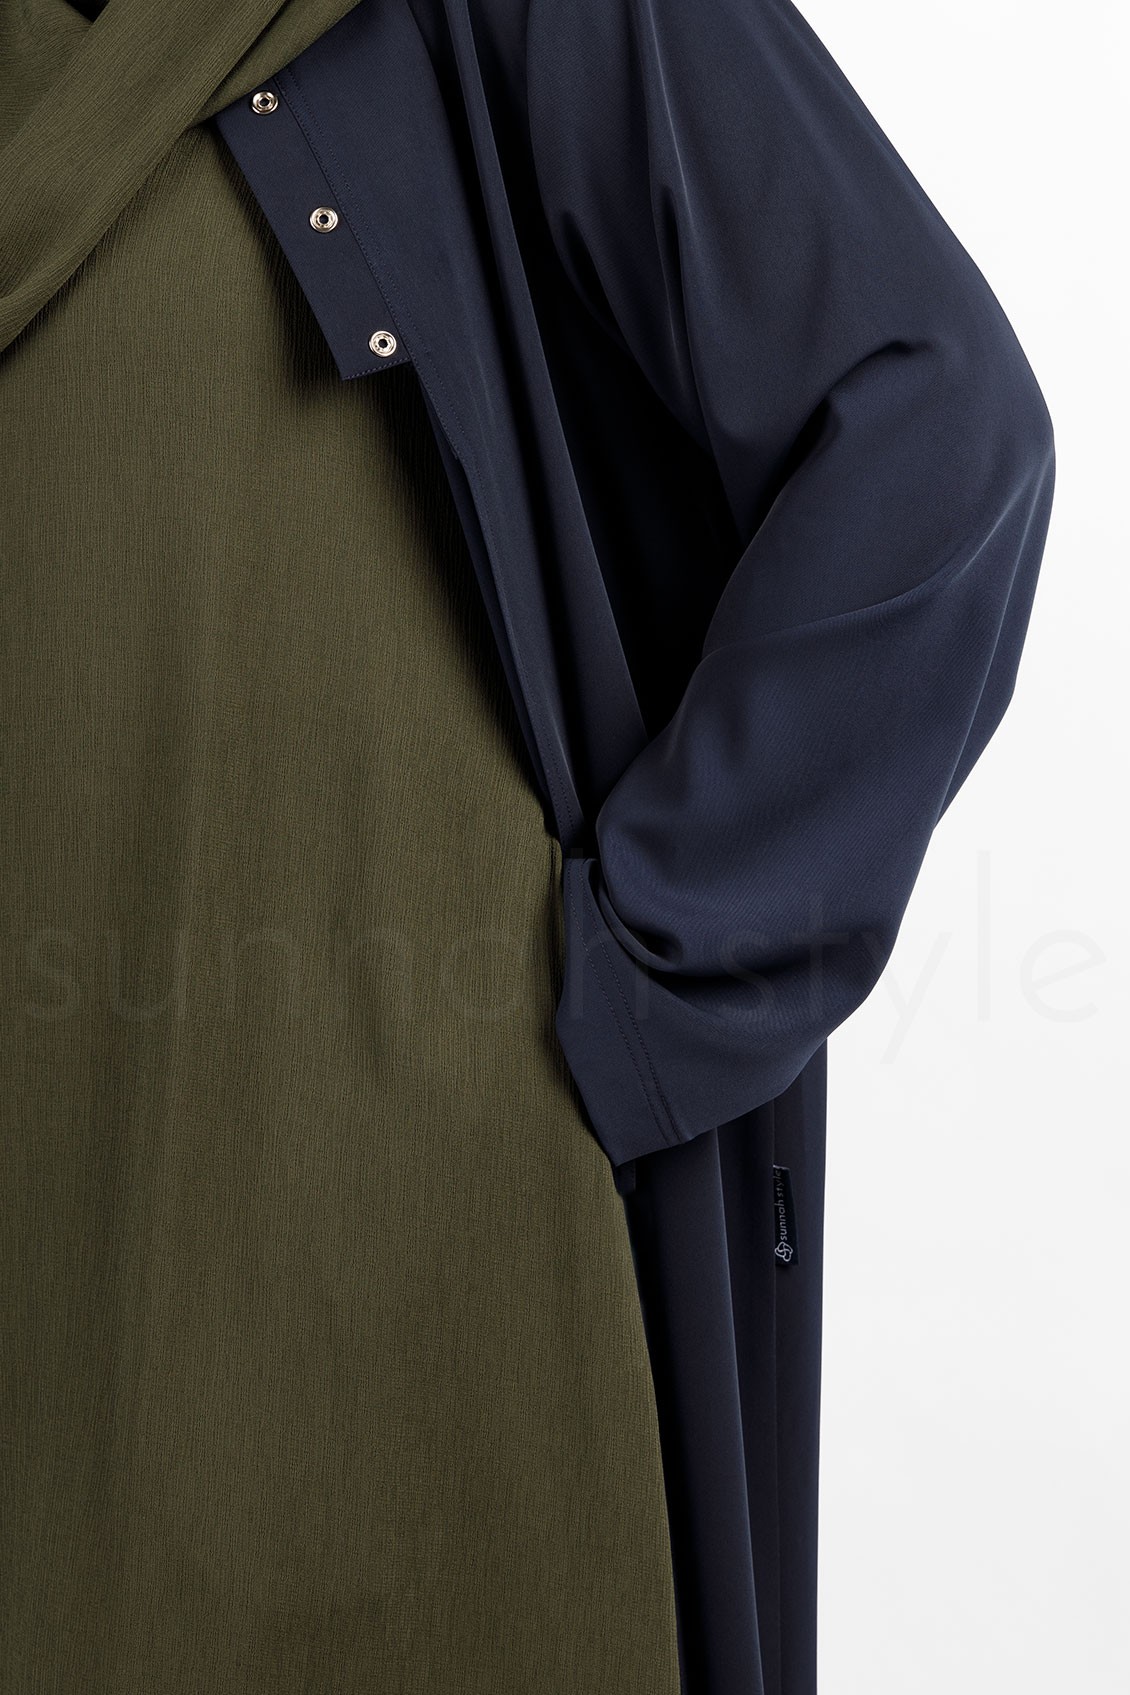 Sunnah Style Brushed Sleeveless Abaya Army